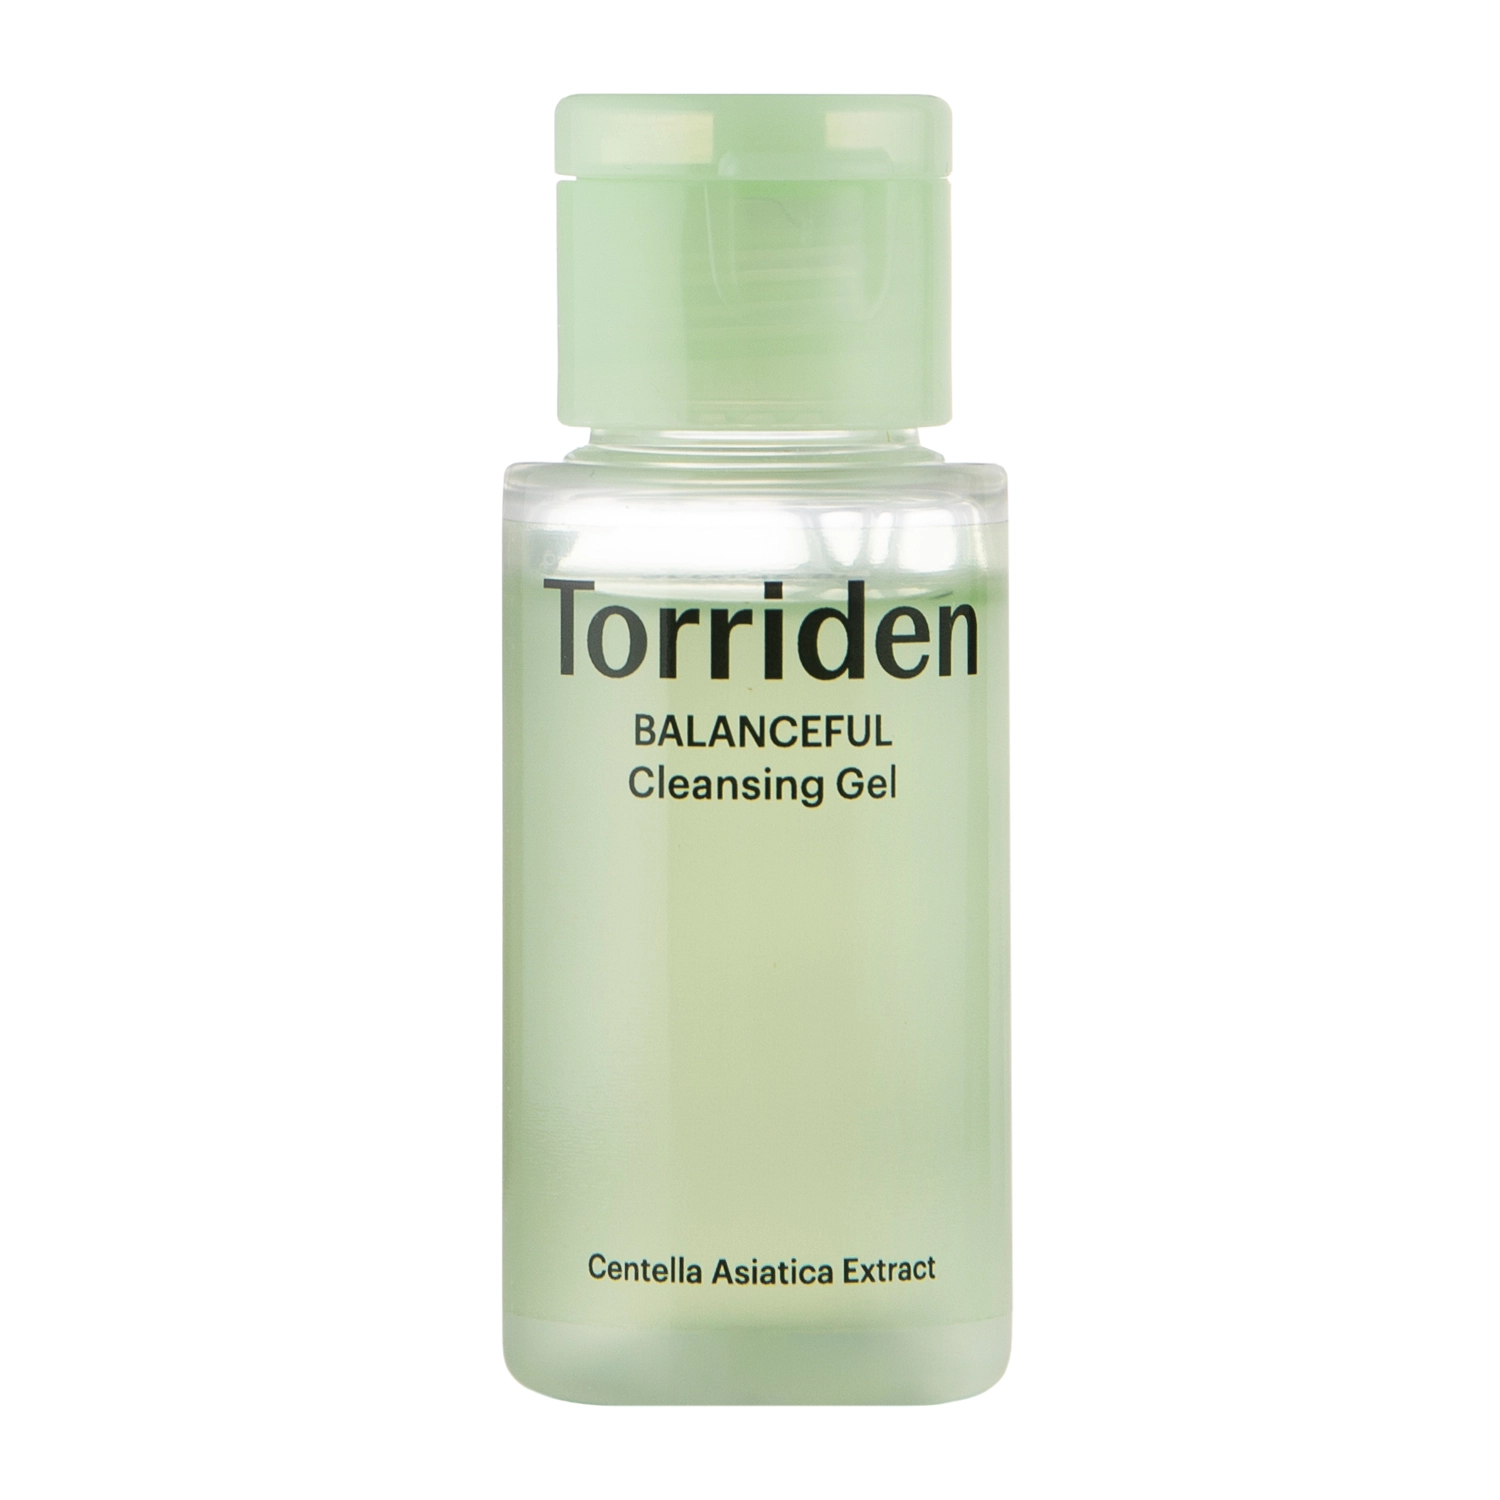 Torriden - Balanceful Cleansing Gel - Kiegyensúlyozó Arctisztító Gél - 30ml